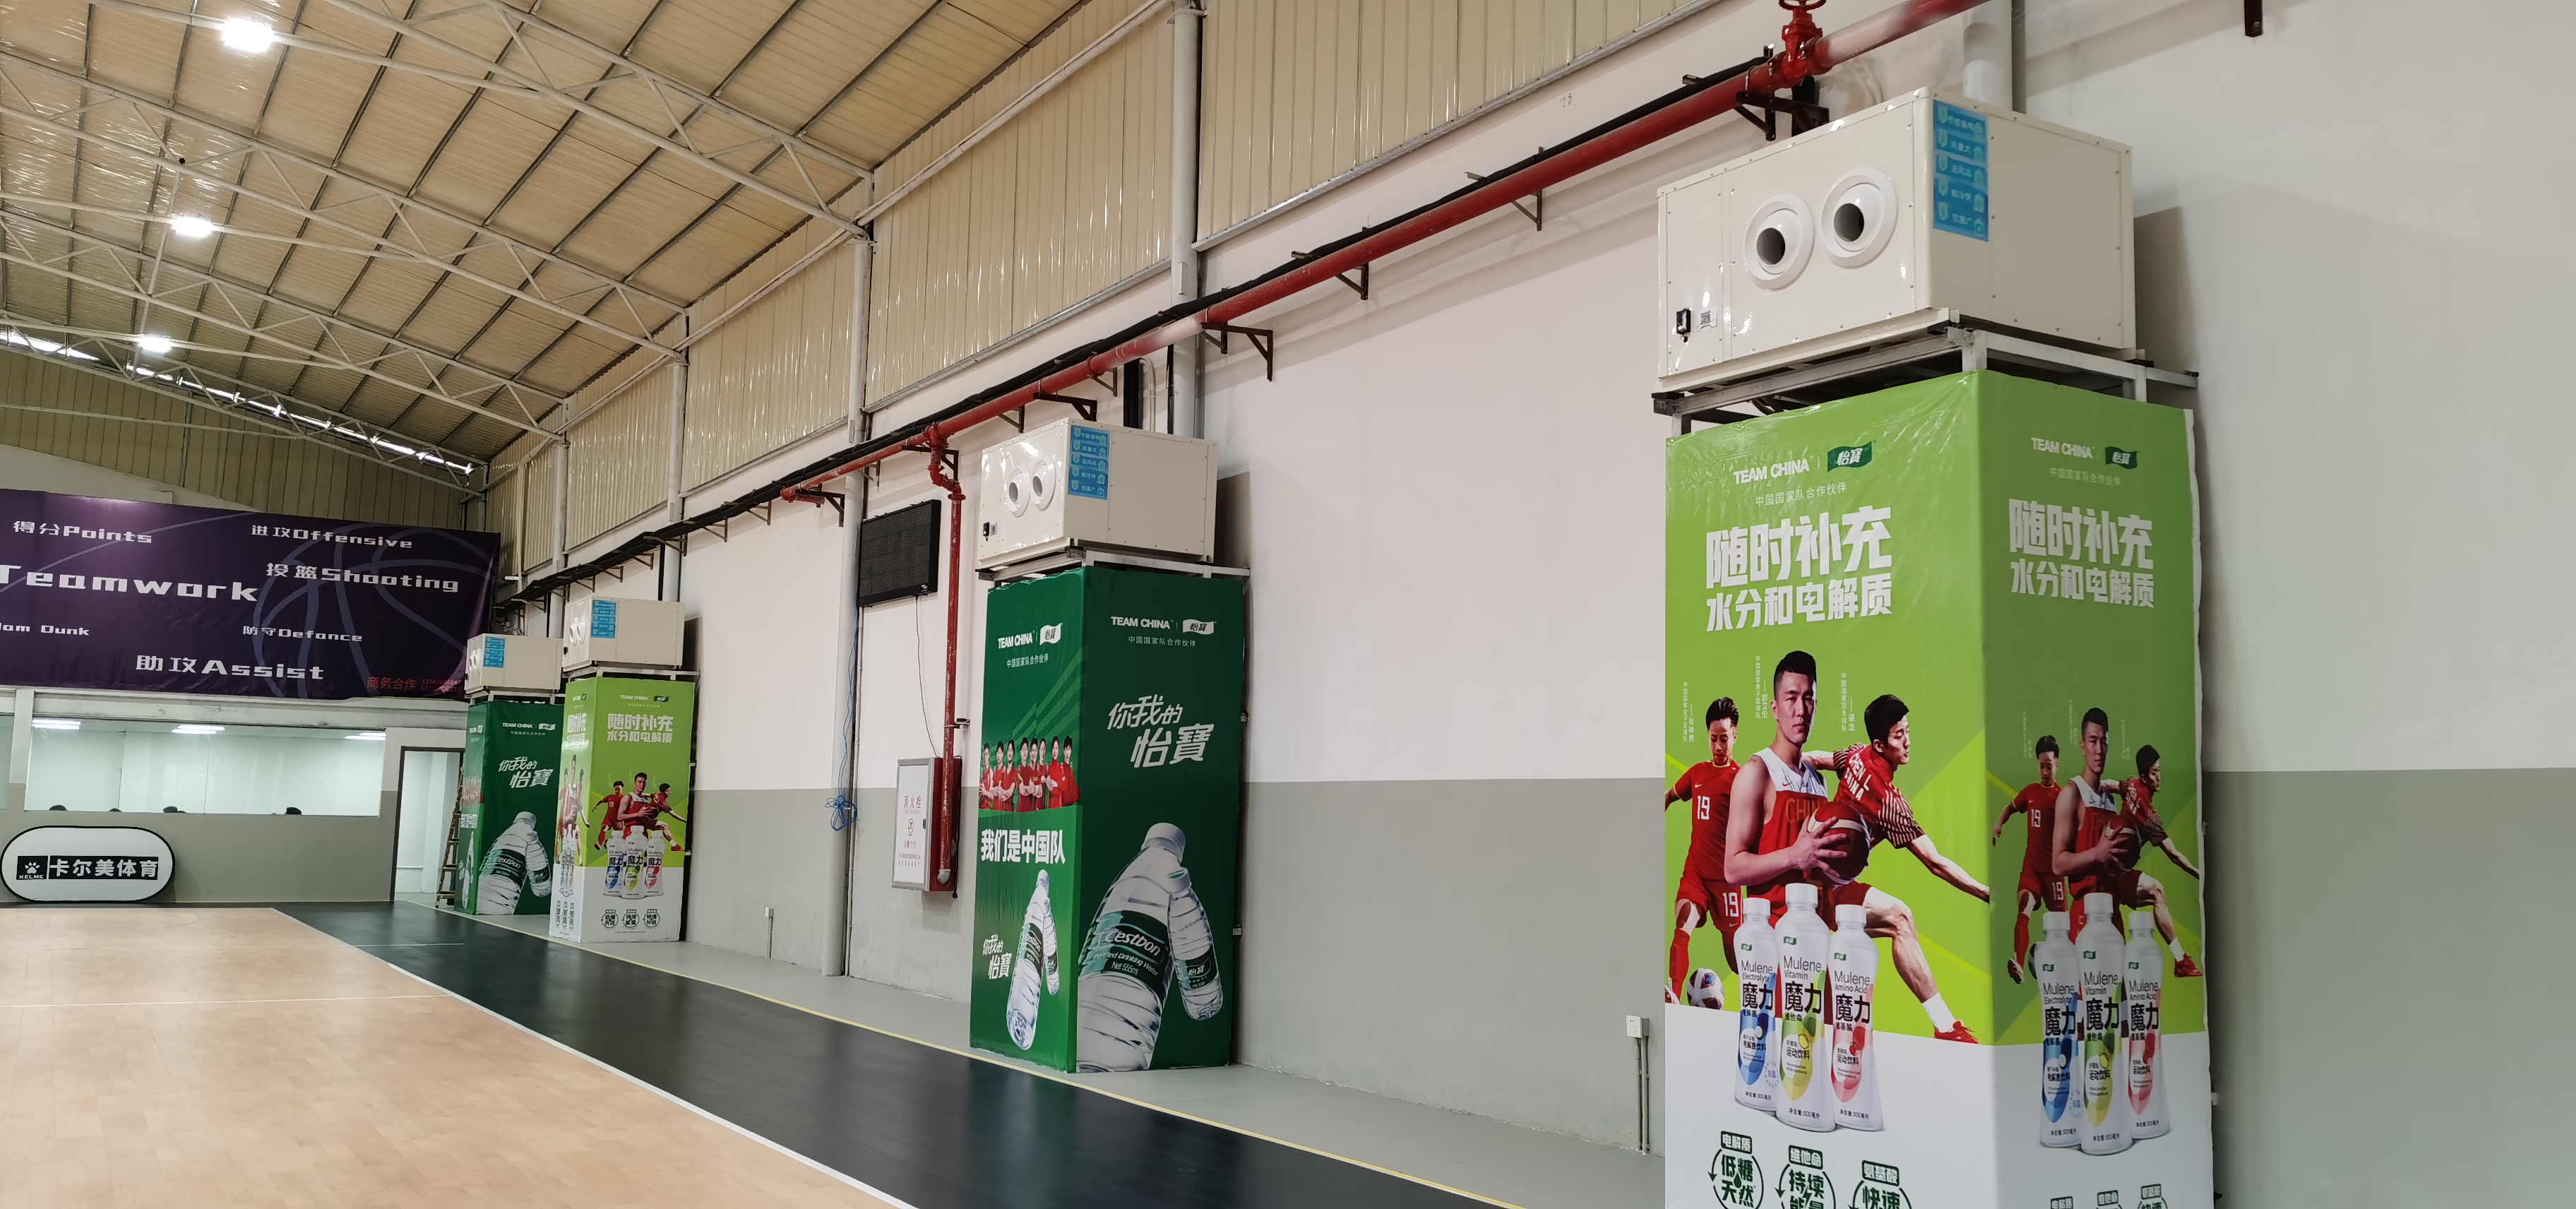 အားကစားခန်းမနှင့် ခန်းမကျယ်ကြီးများအတွက် ရေအအေးပေးသော လေအေးပေးစက်